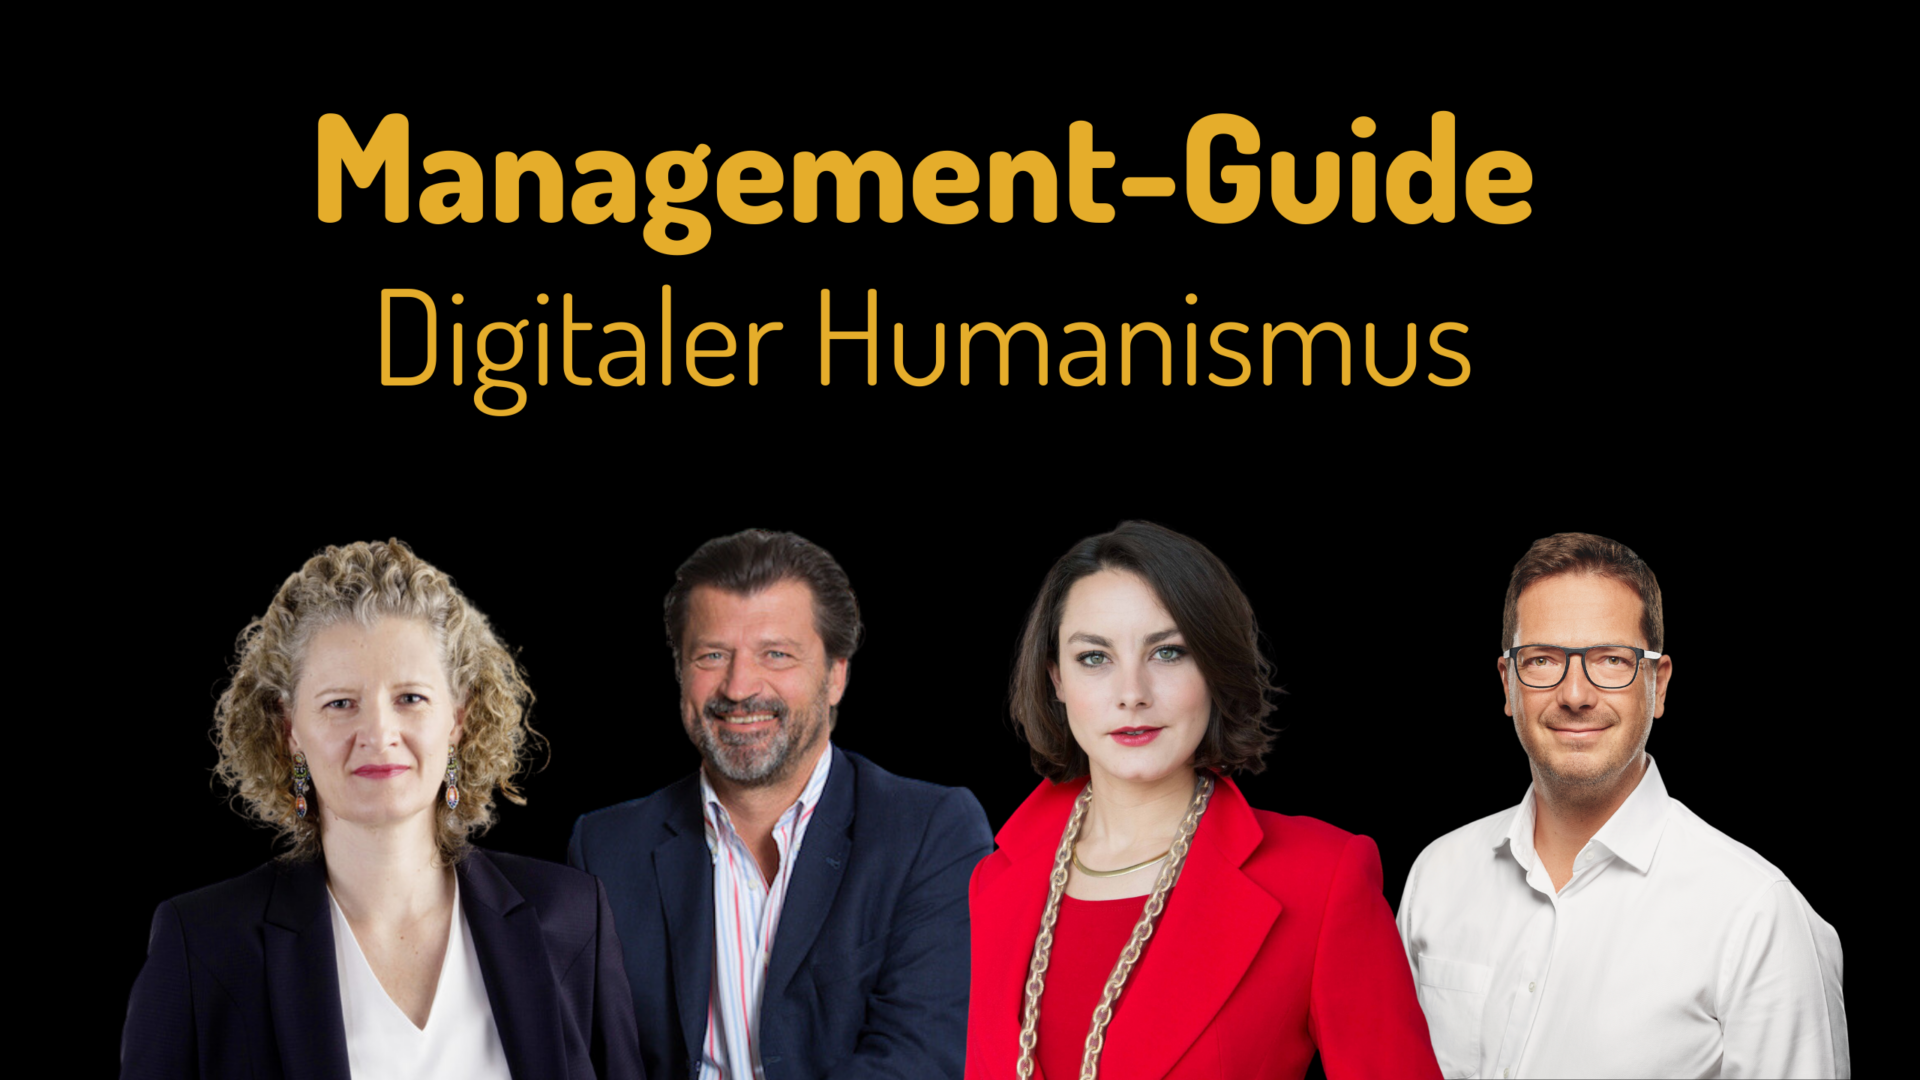 Bild Management Guide - Digitaler Humanismus, 4 Personen - Yvonne Pirkner und Martin Rohla, Barbara Stöttinger und Martin Giesswein